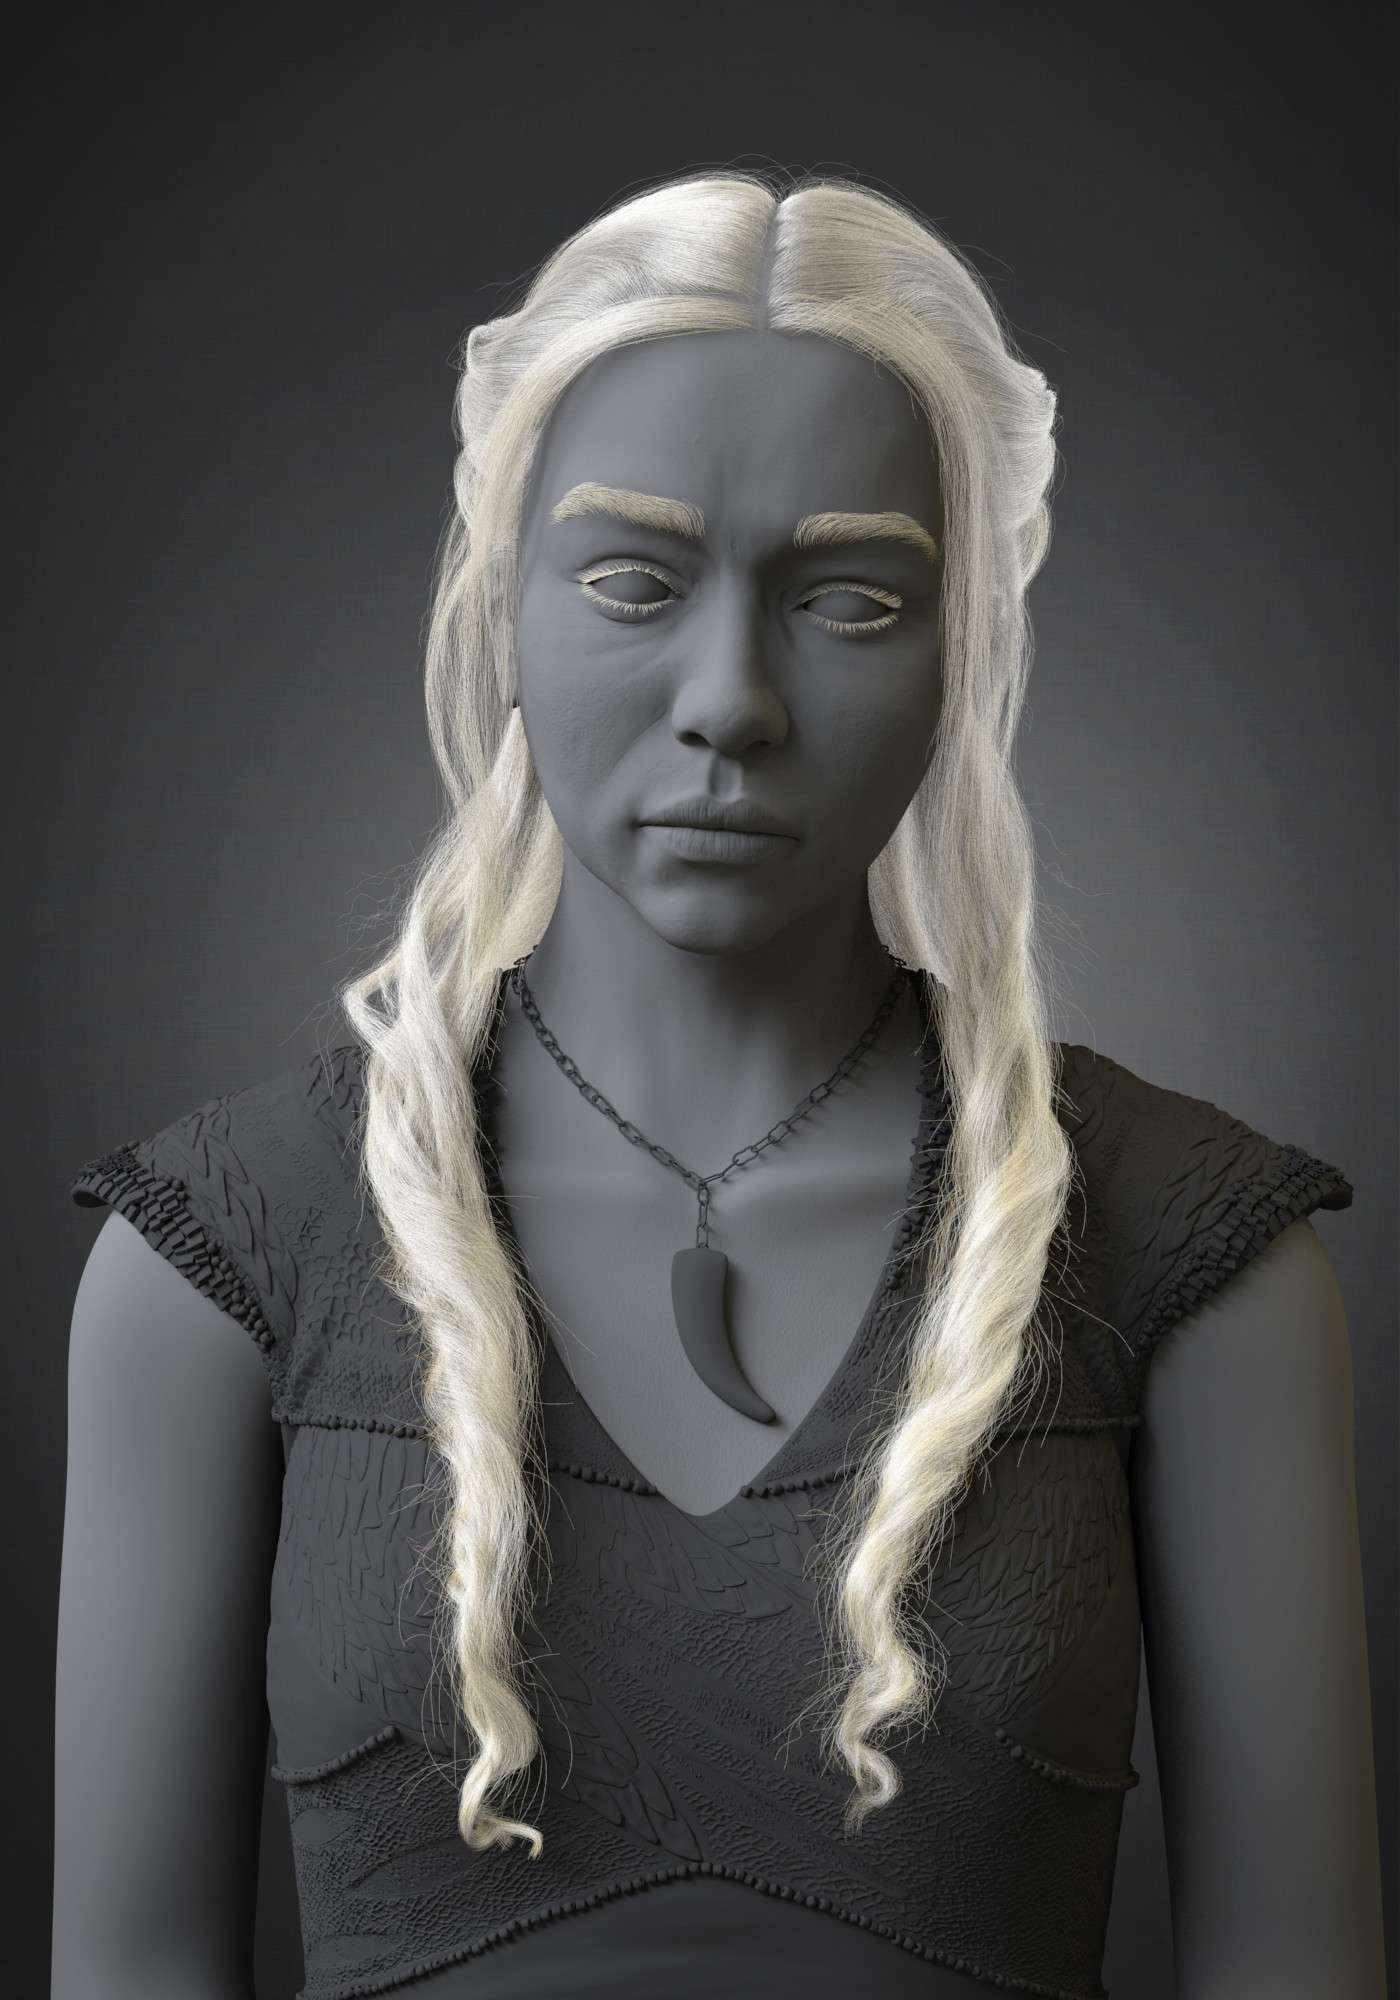 Making of Daenerys Targaryen by Daniel la Mura